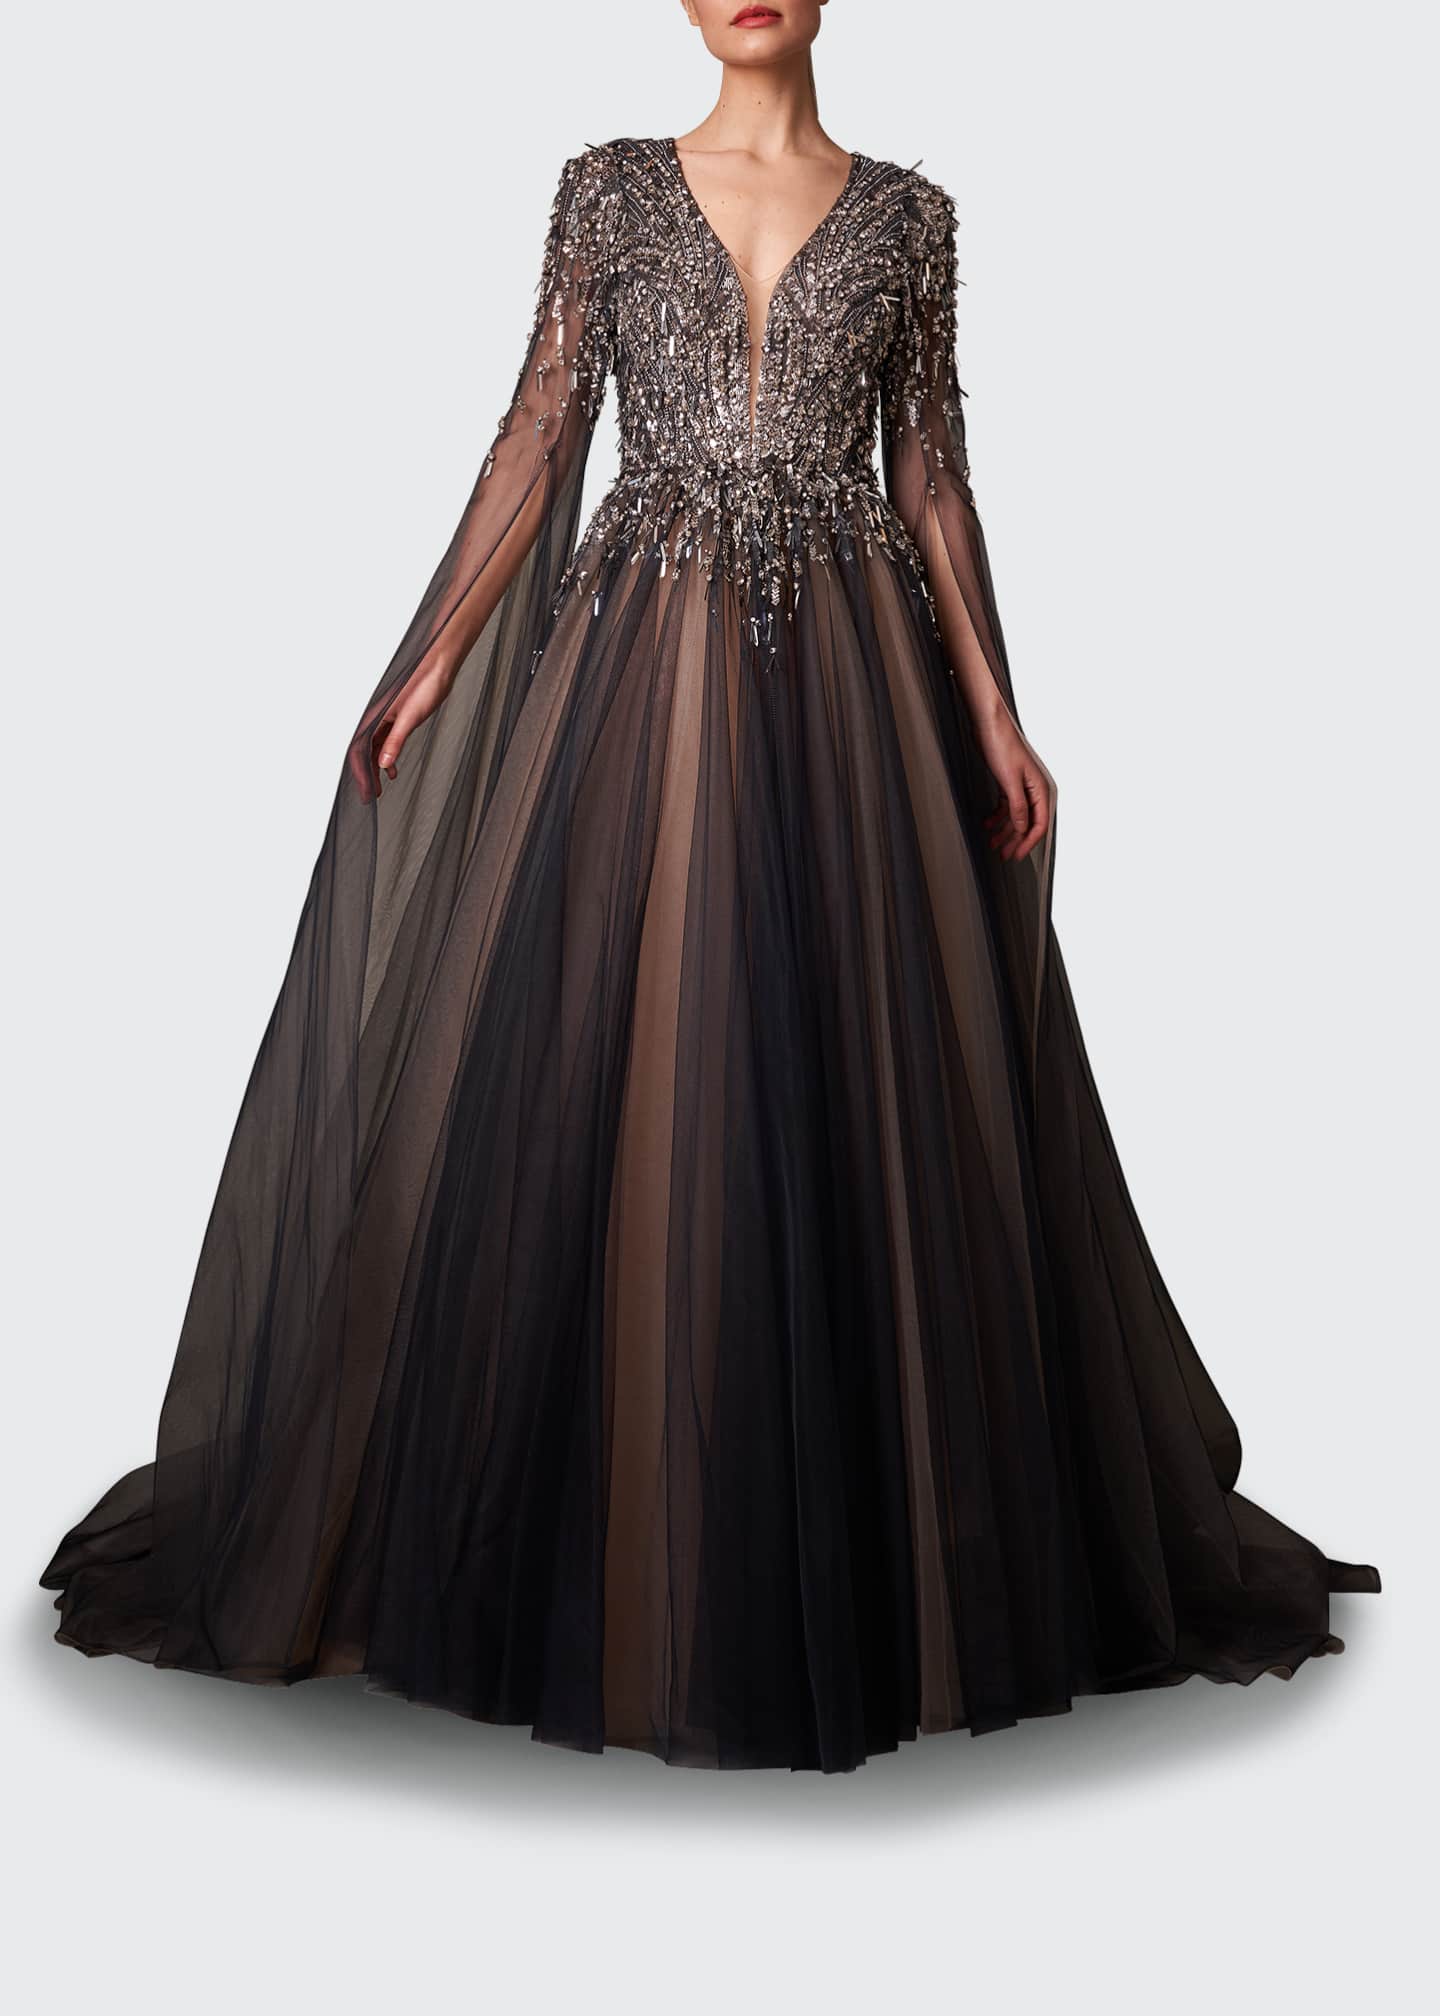 Jenny Packham Crystal-Embellished V-Neck Gown - Bergdorf Goodman